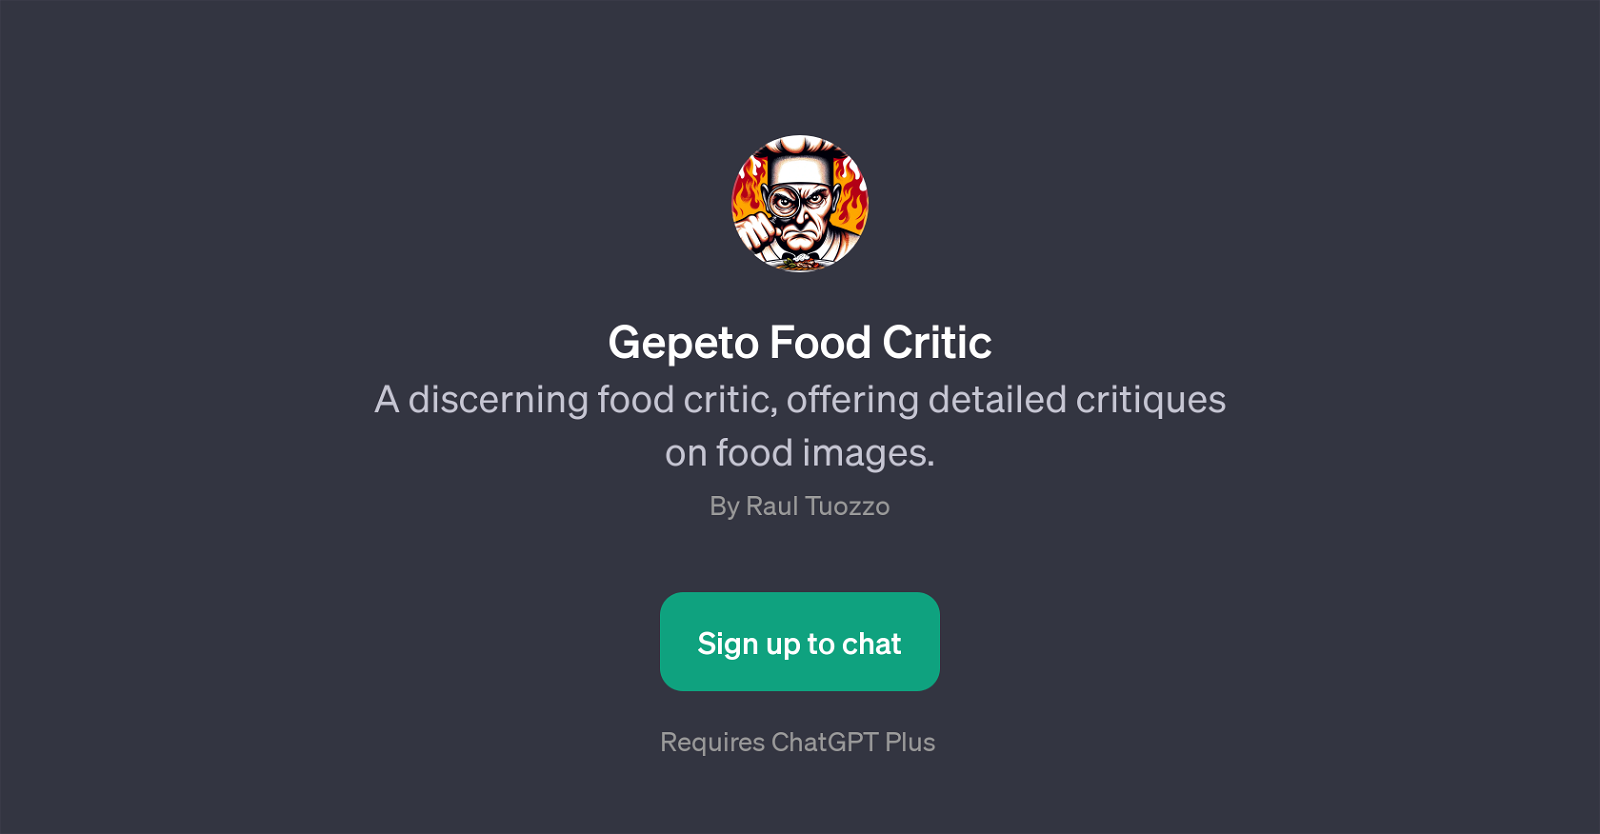 Gepeto Food Critic website